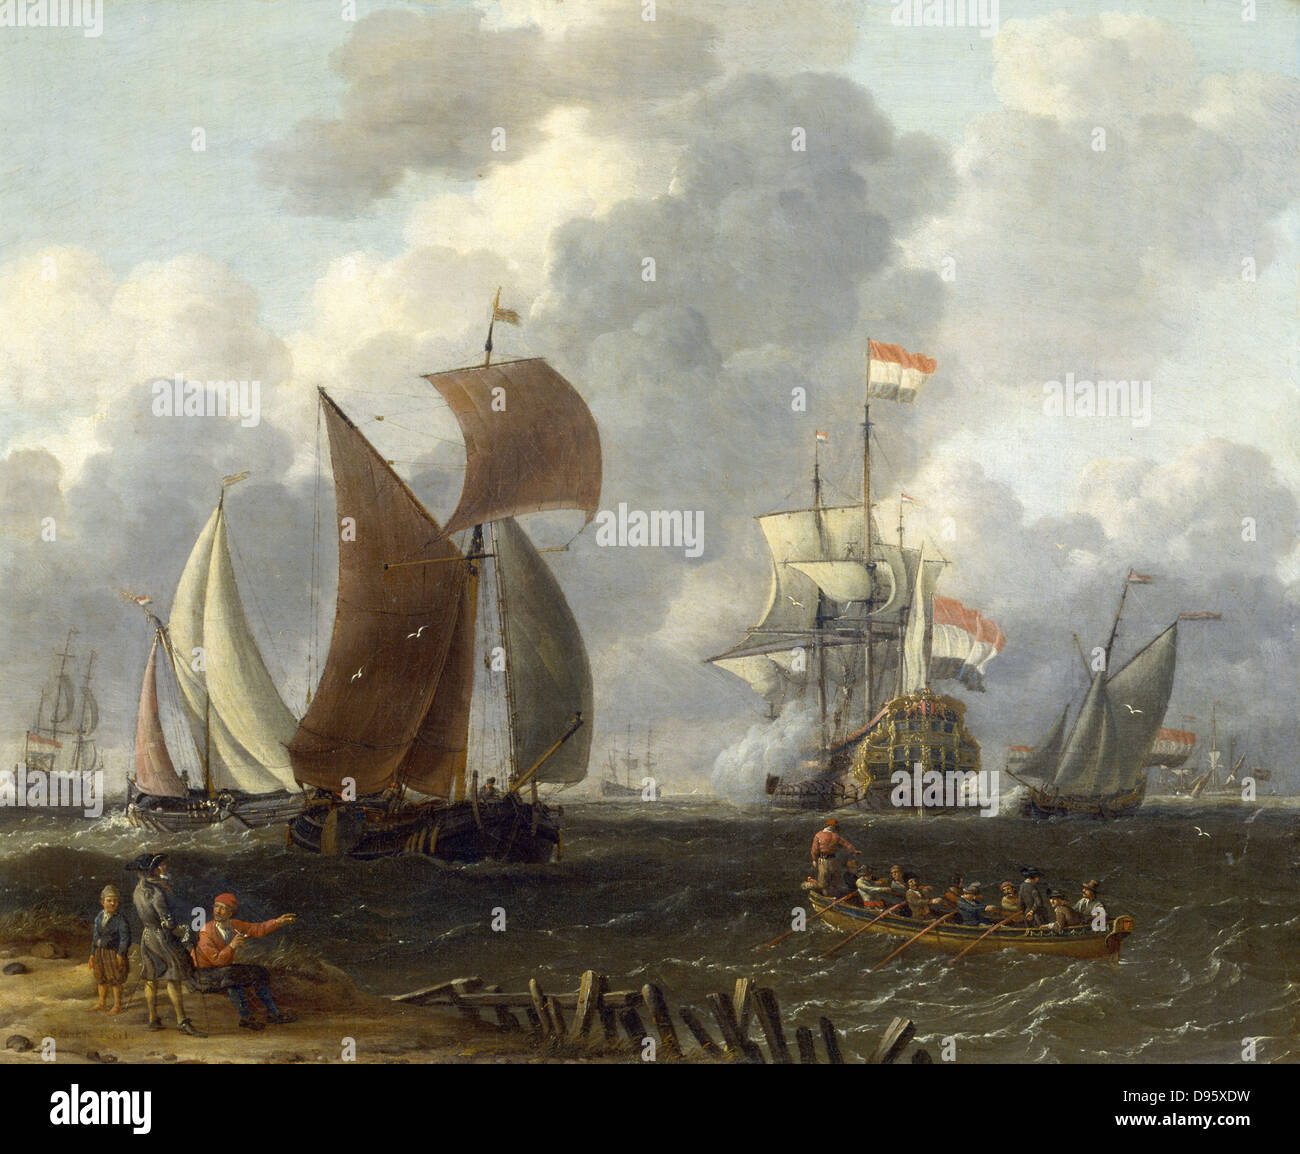 "Niederländische Kriegsschiff in einem Meer der Ruhe" Künstler, Abrham Storck (c1635-1704). Öl auf Holz. Privatsammlung. Stockfoto